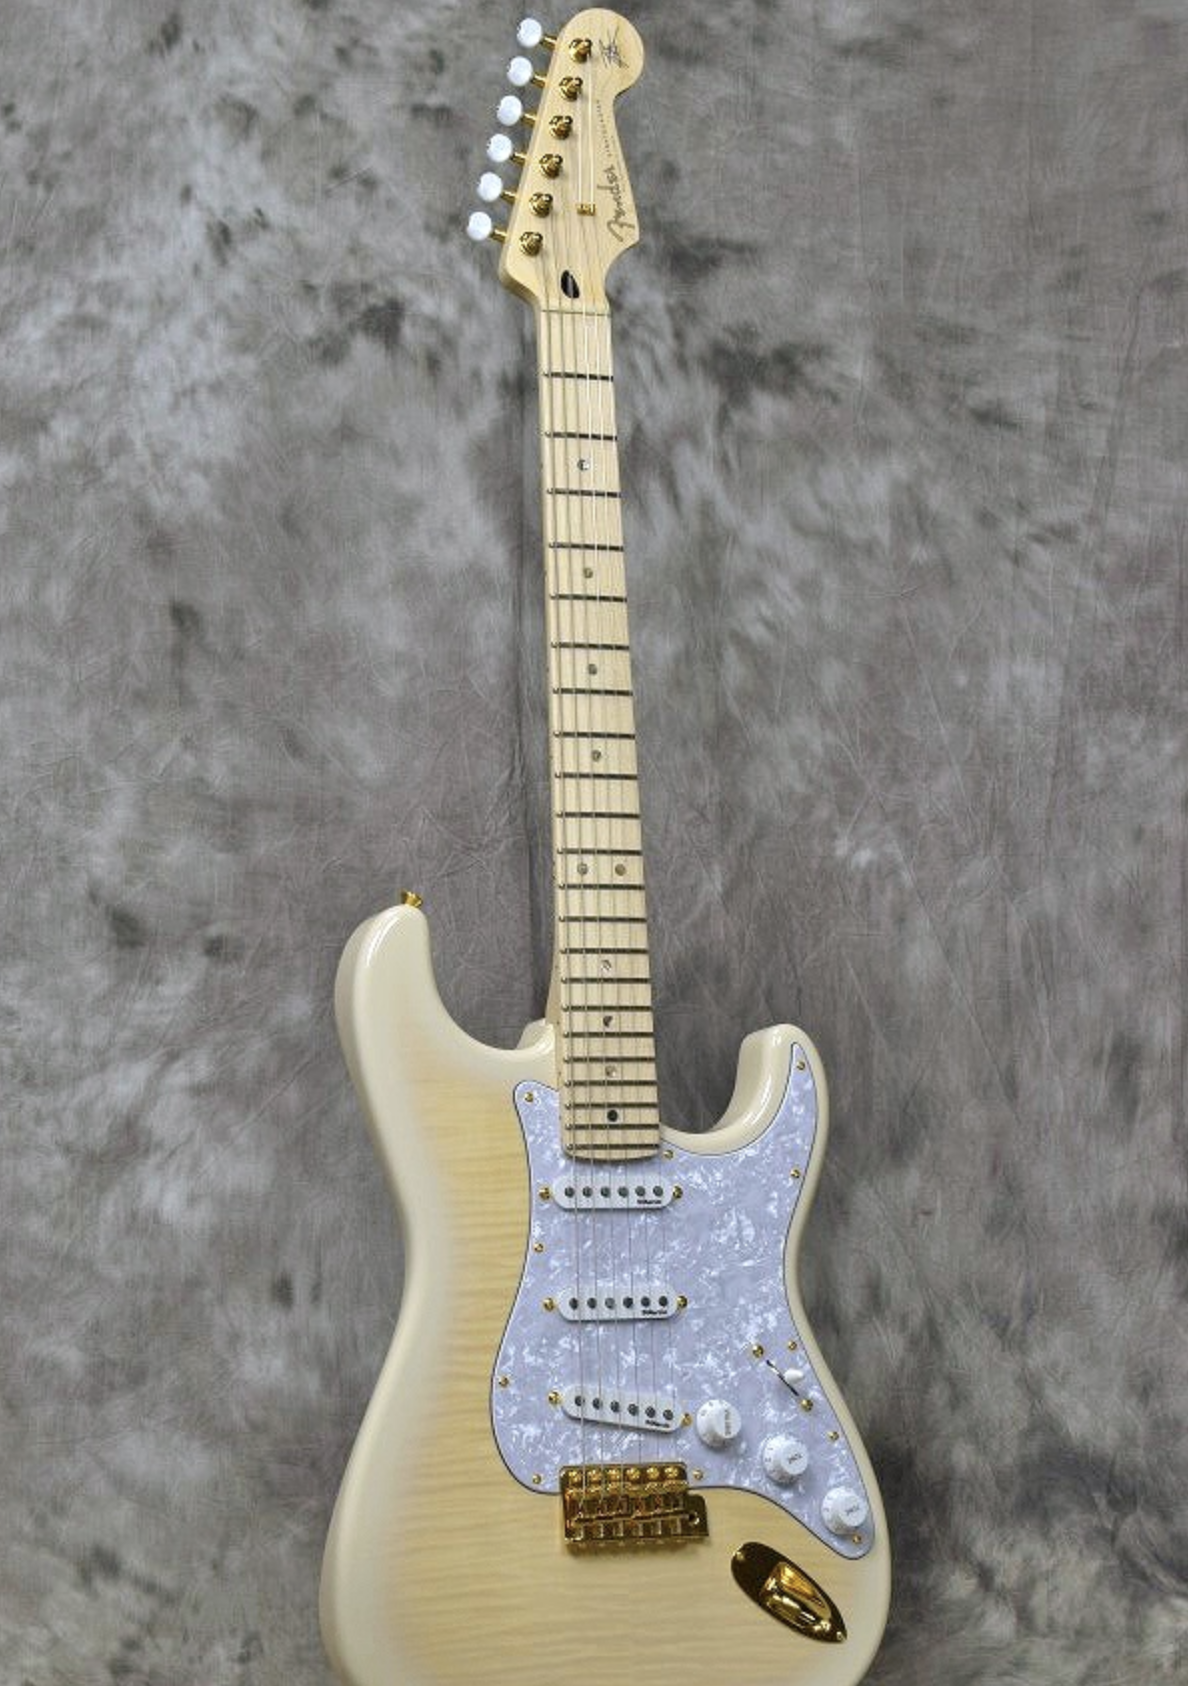 Fender : Exclusive Richie Kotzen Stratocaster See-through White Burst Fender  made in Japan